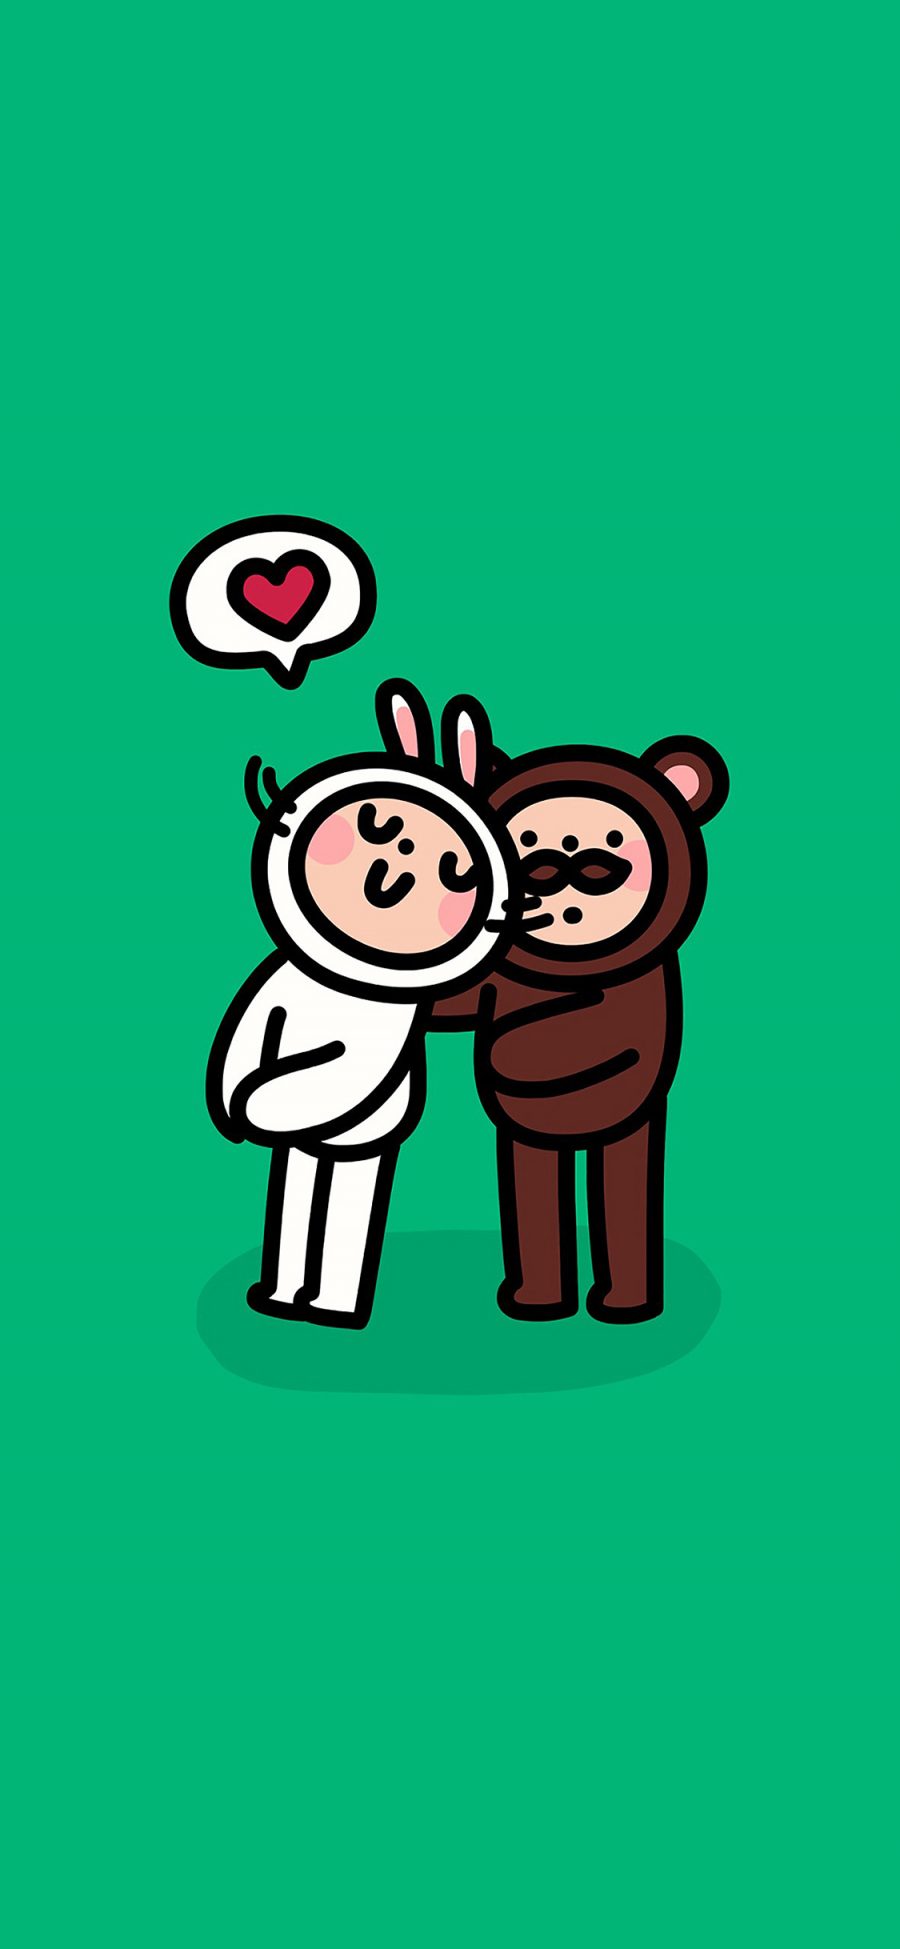 [2436×1125]有机先生 爱你 熊 兔子 可爱 爱心 绿色 苹果手机动漫壁纸图片